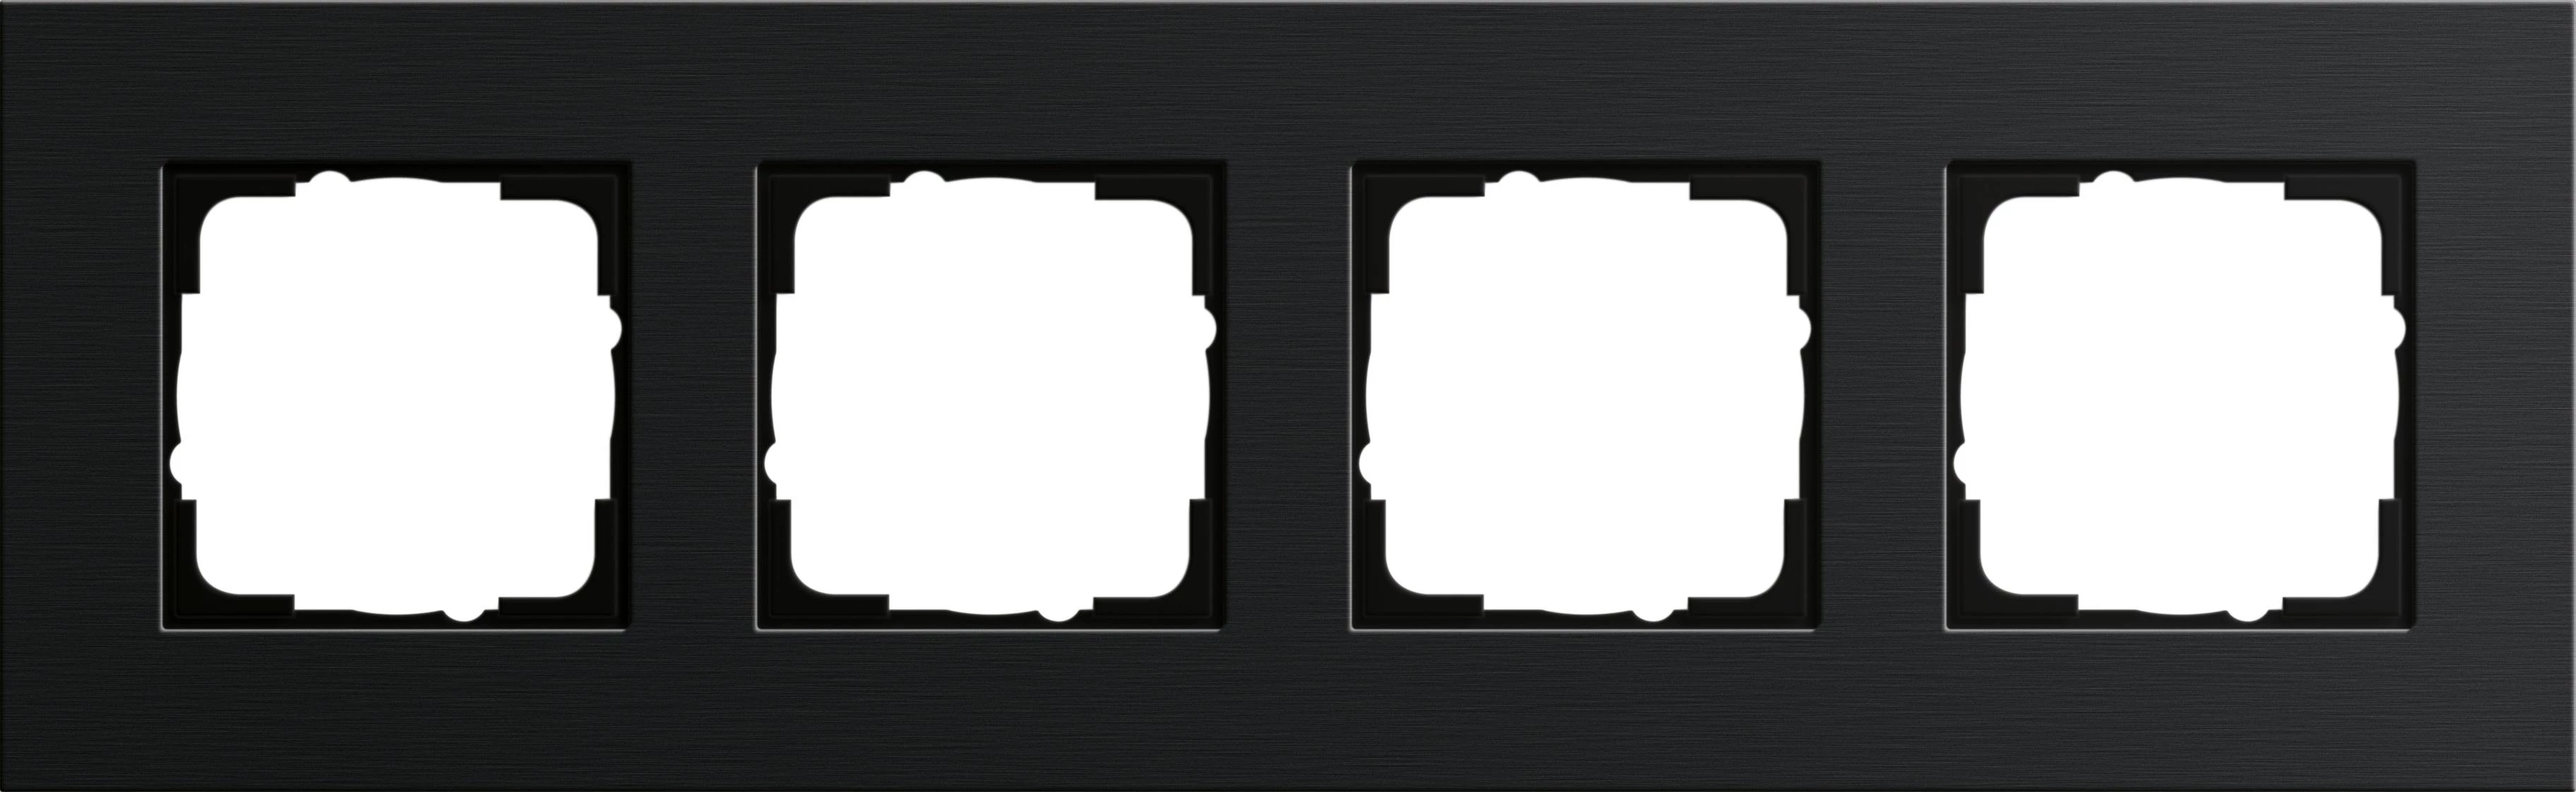  артикул 0214126 название Рамка 4-ая (четверная), Алюминий Черный (анодированный), серия Esprit